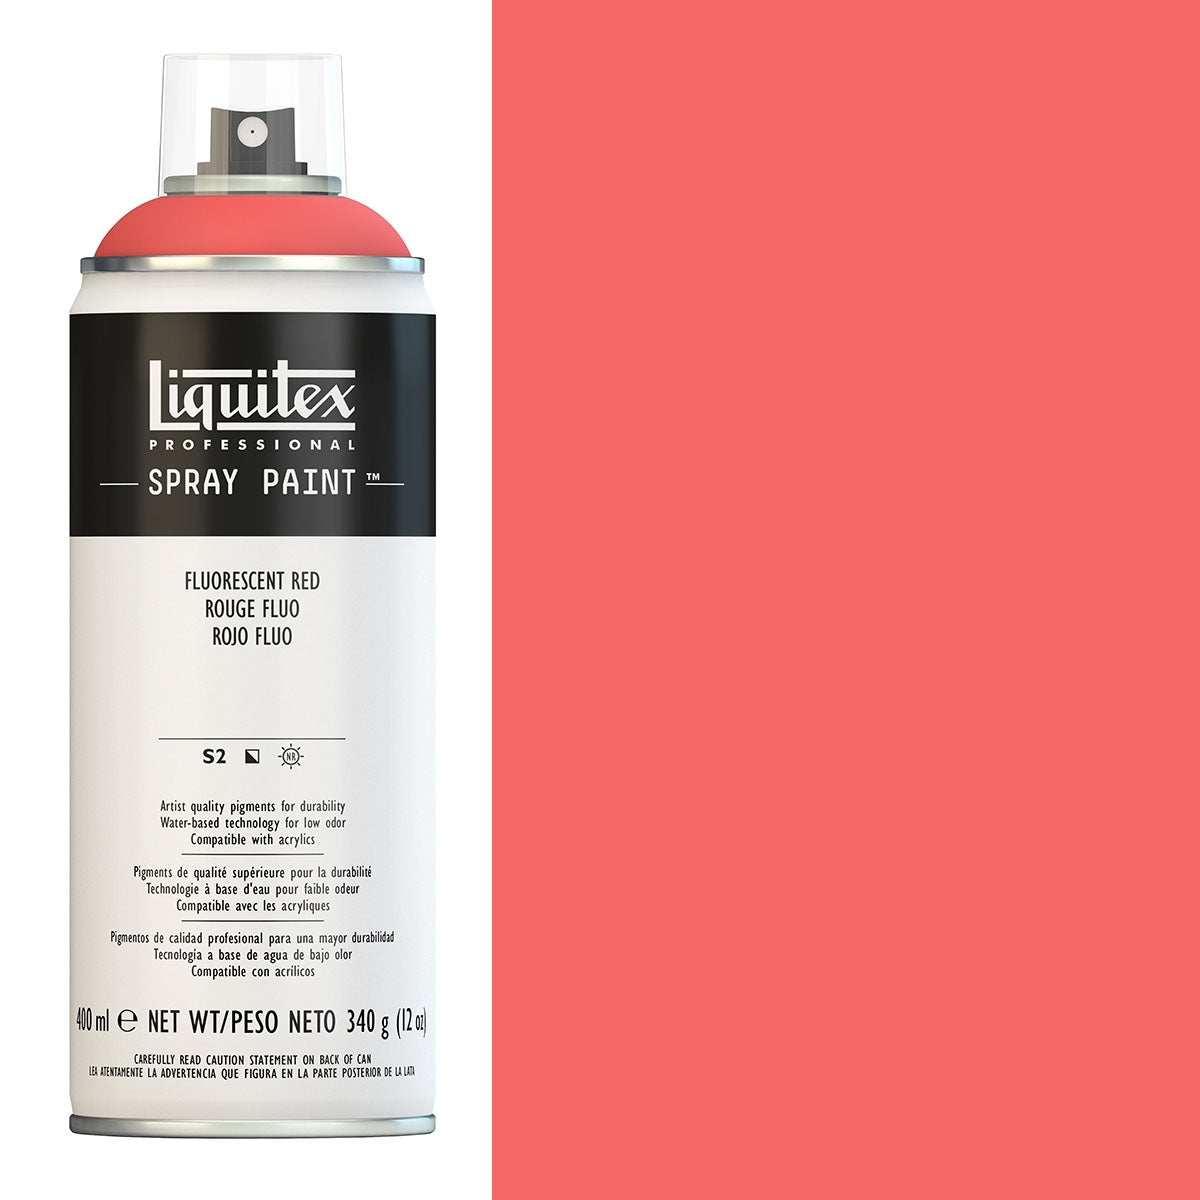 Liquitex - peintures pulvérisées - 400 ml de rouge fluorescent